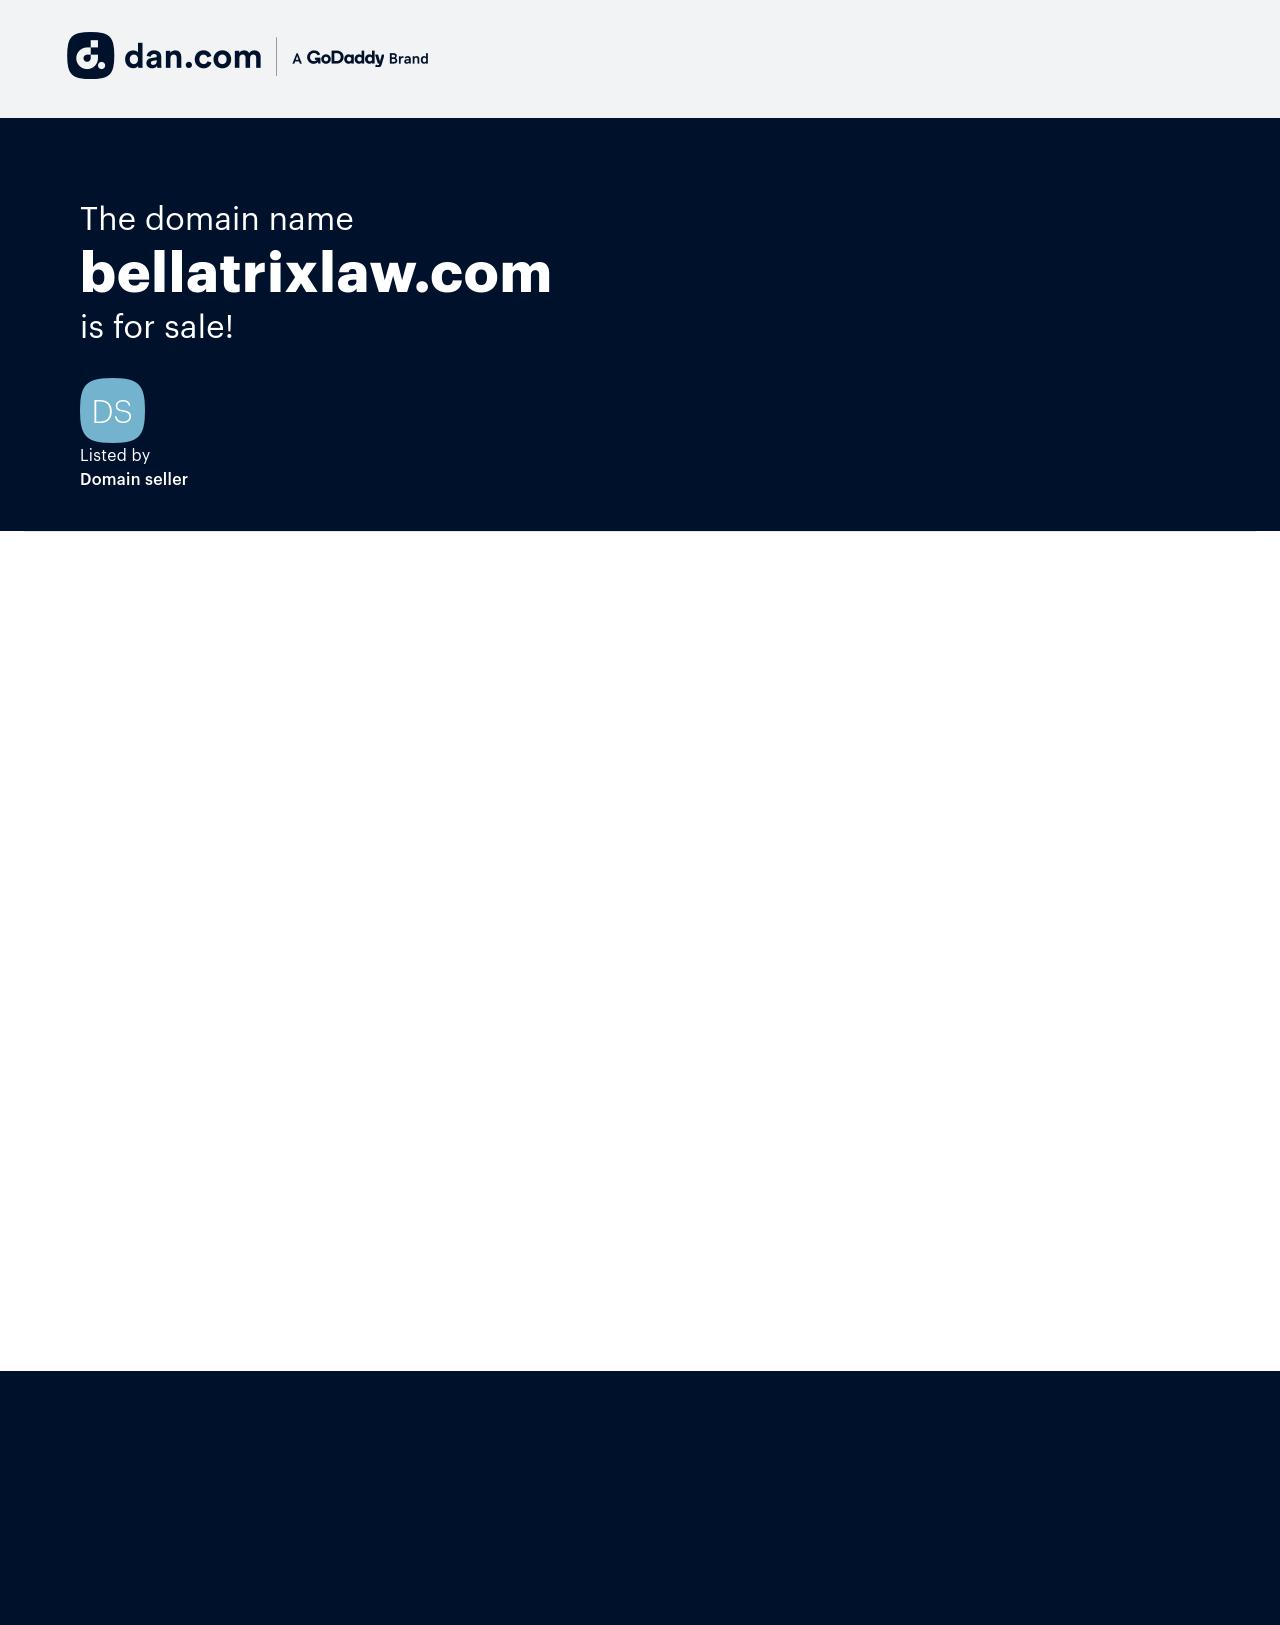 Bellatrix PC - Clayton MO Lawyers